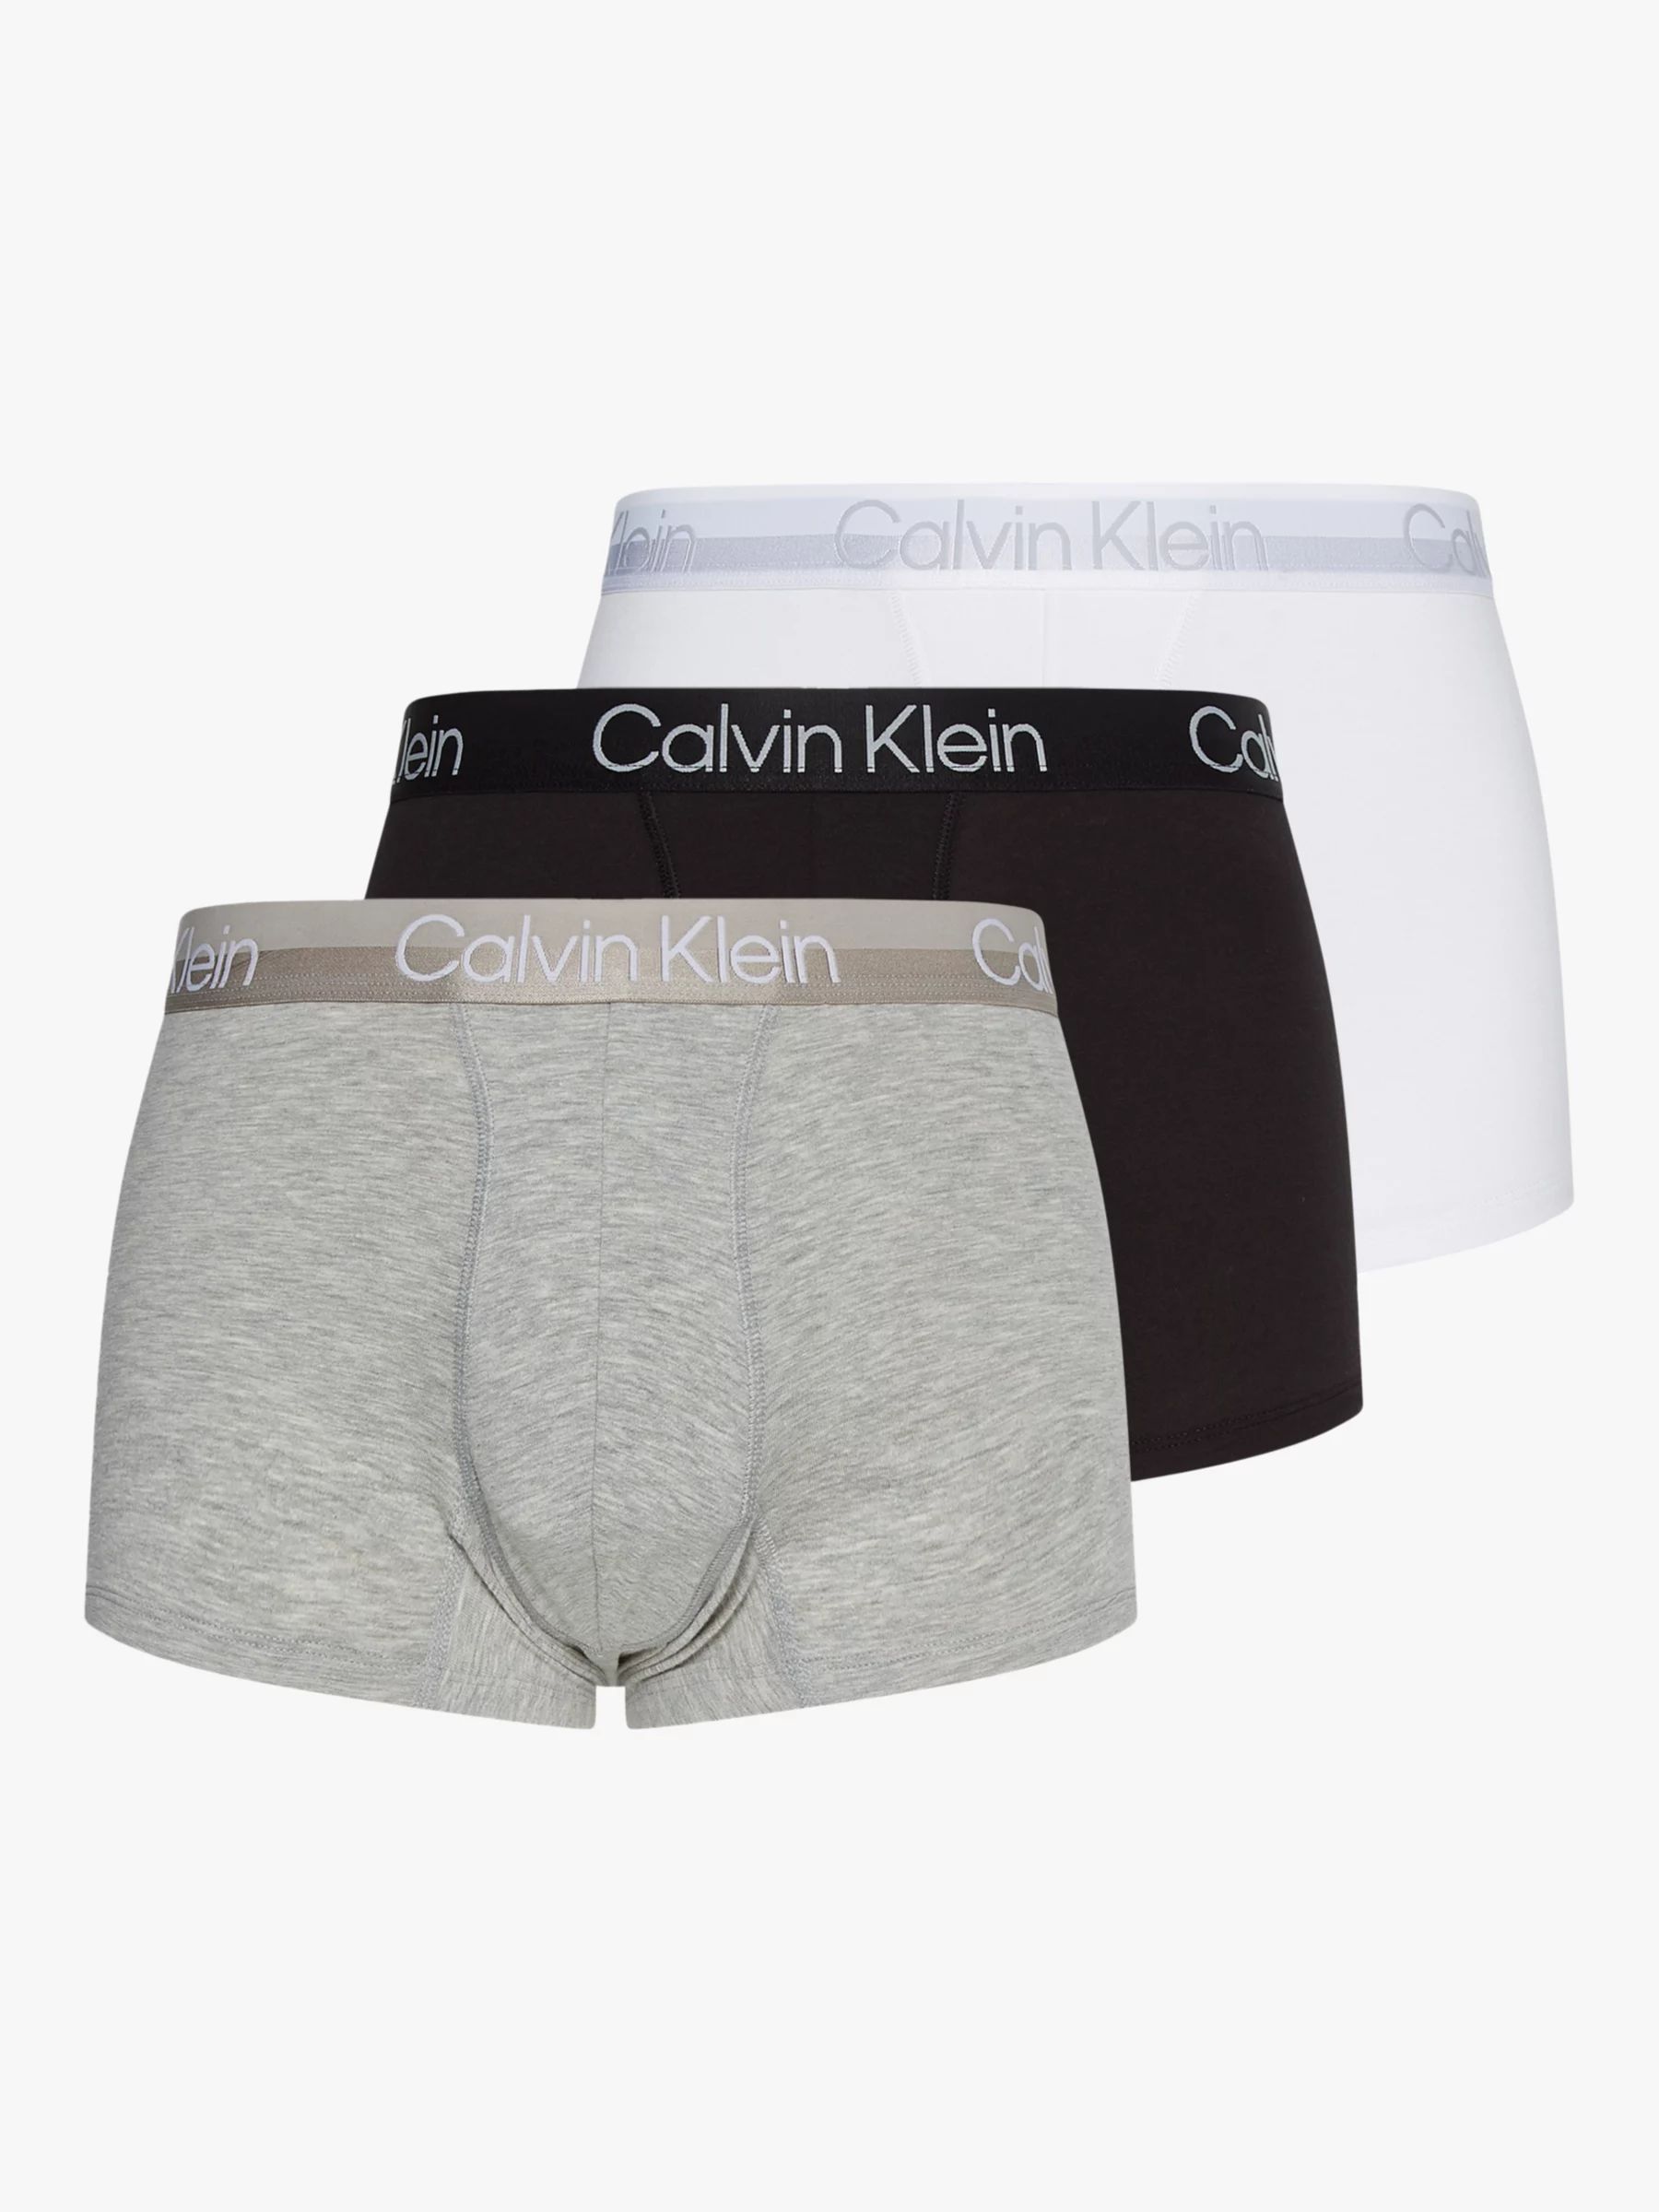 Calvin Klein Plain Logo Trunks, Pack of 3, Multi | John Lewis (UK)